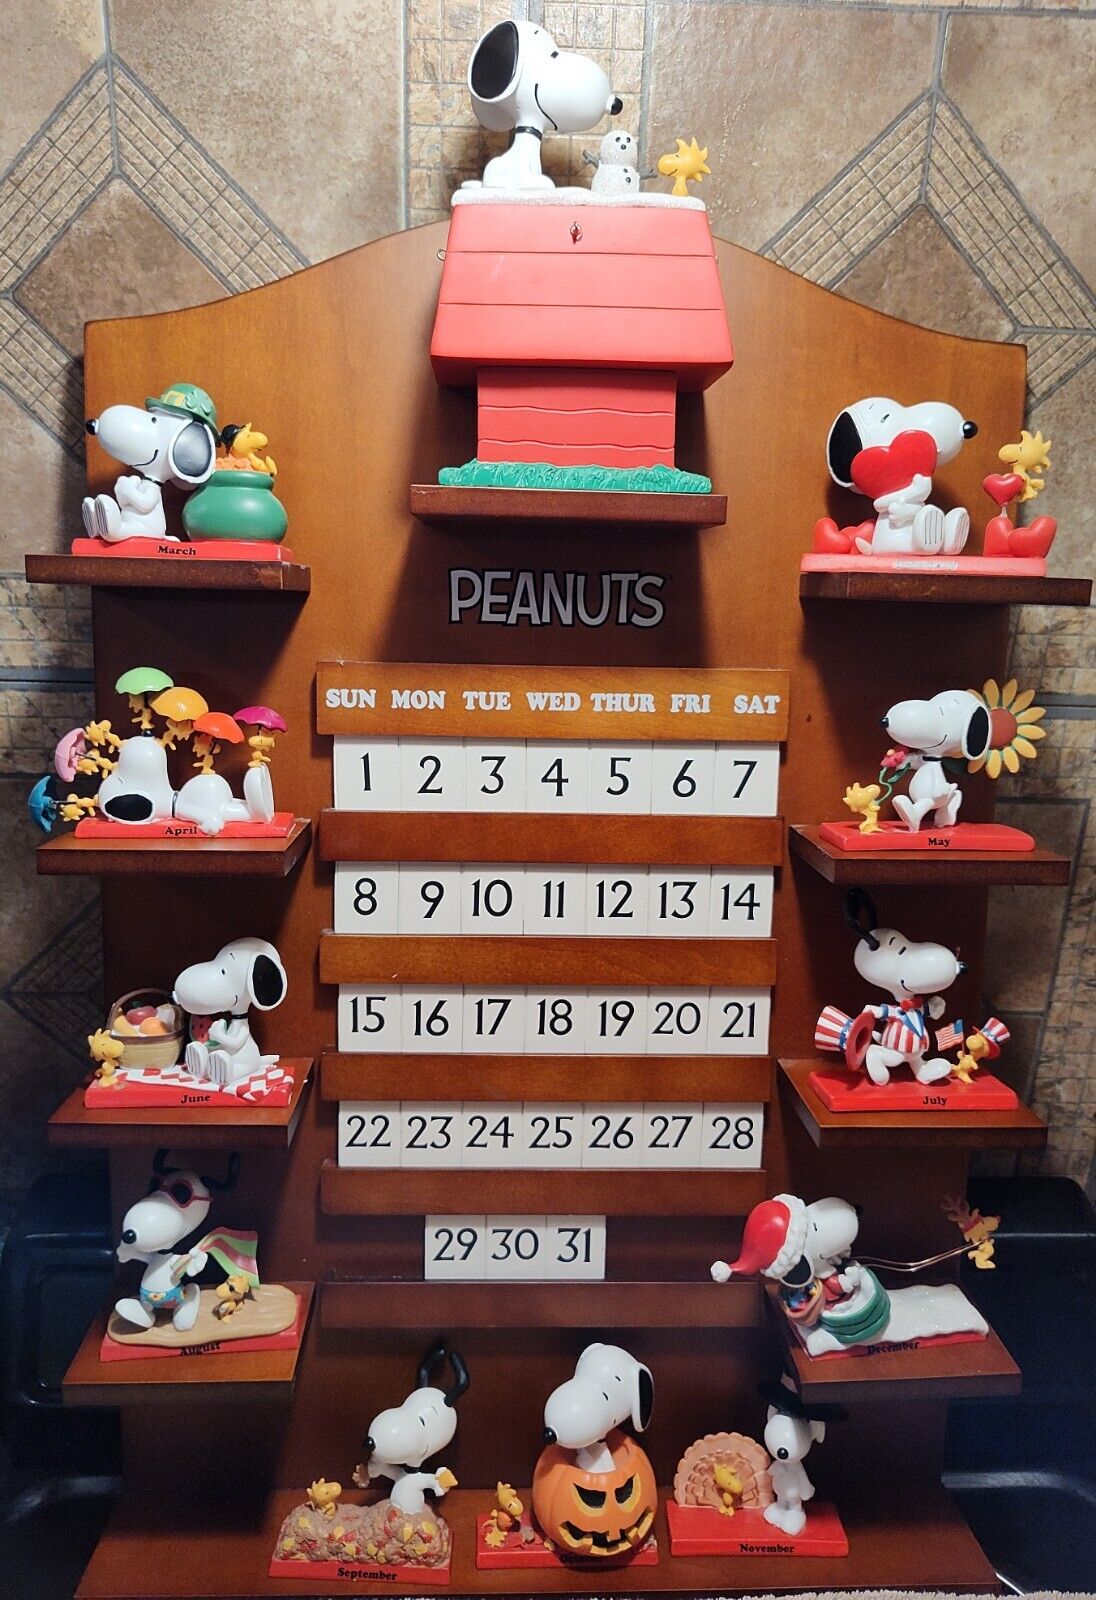 Bradford Exchange Peanuts Snoopy Perpetual Calendar Display And 12 Figures Tiles